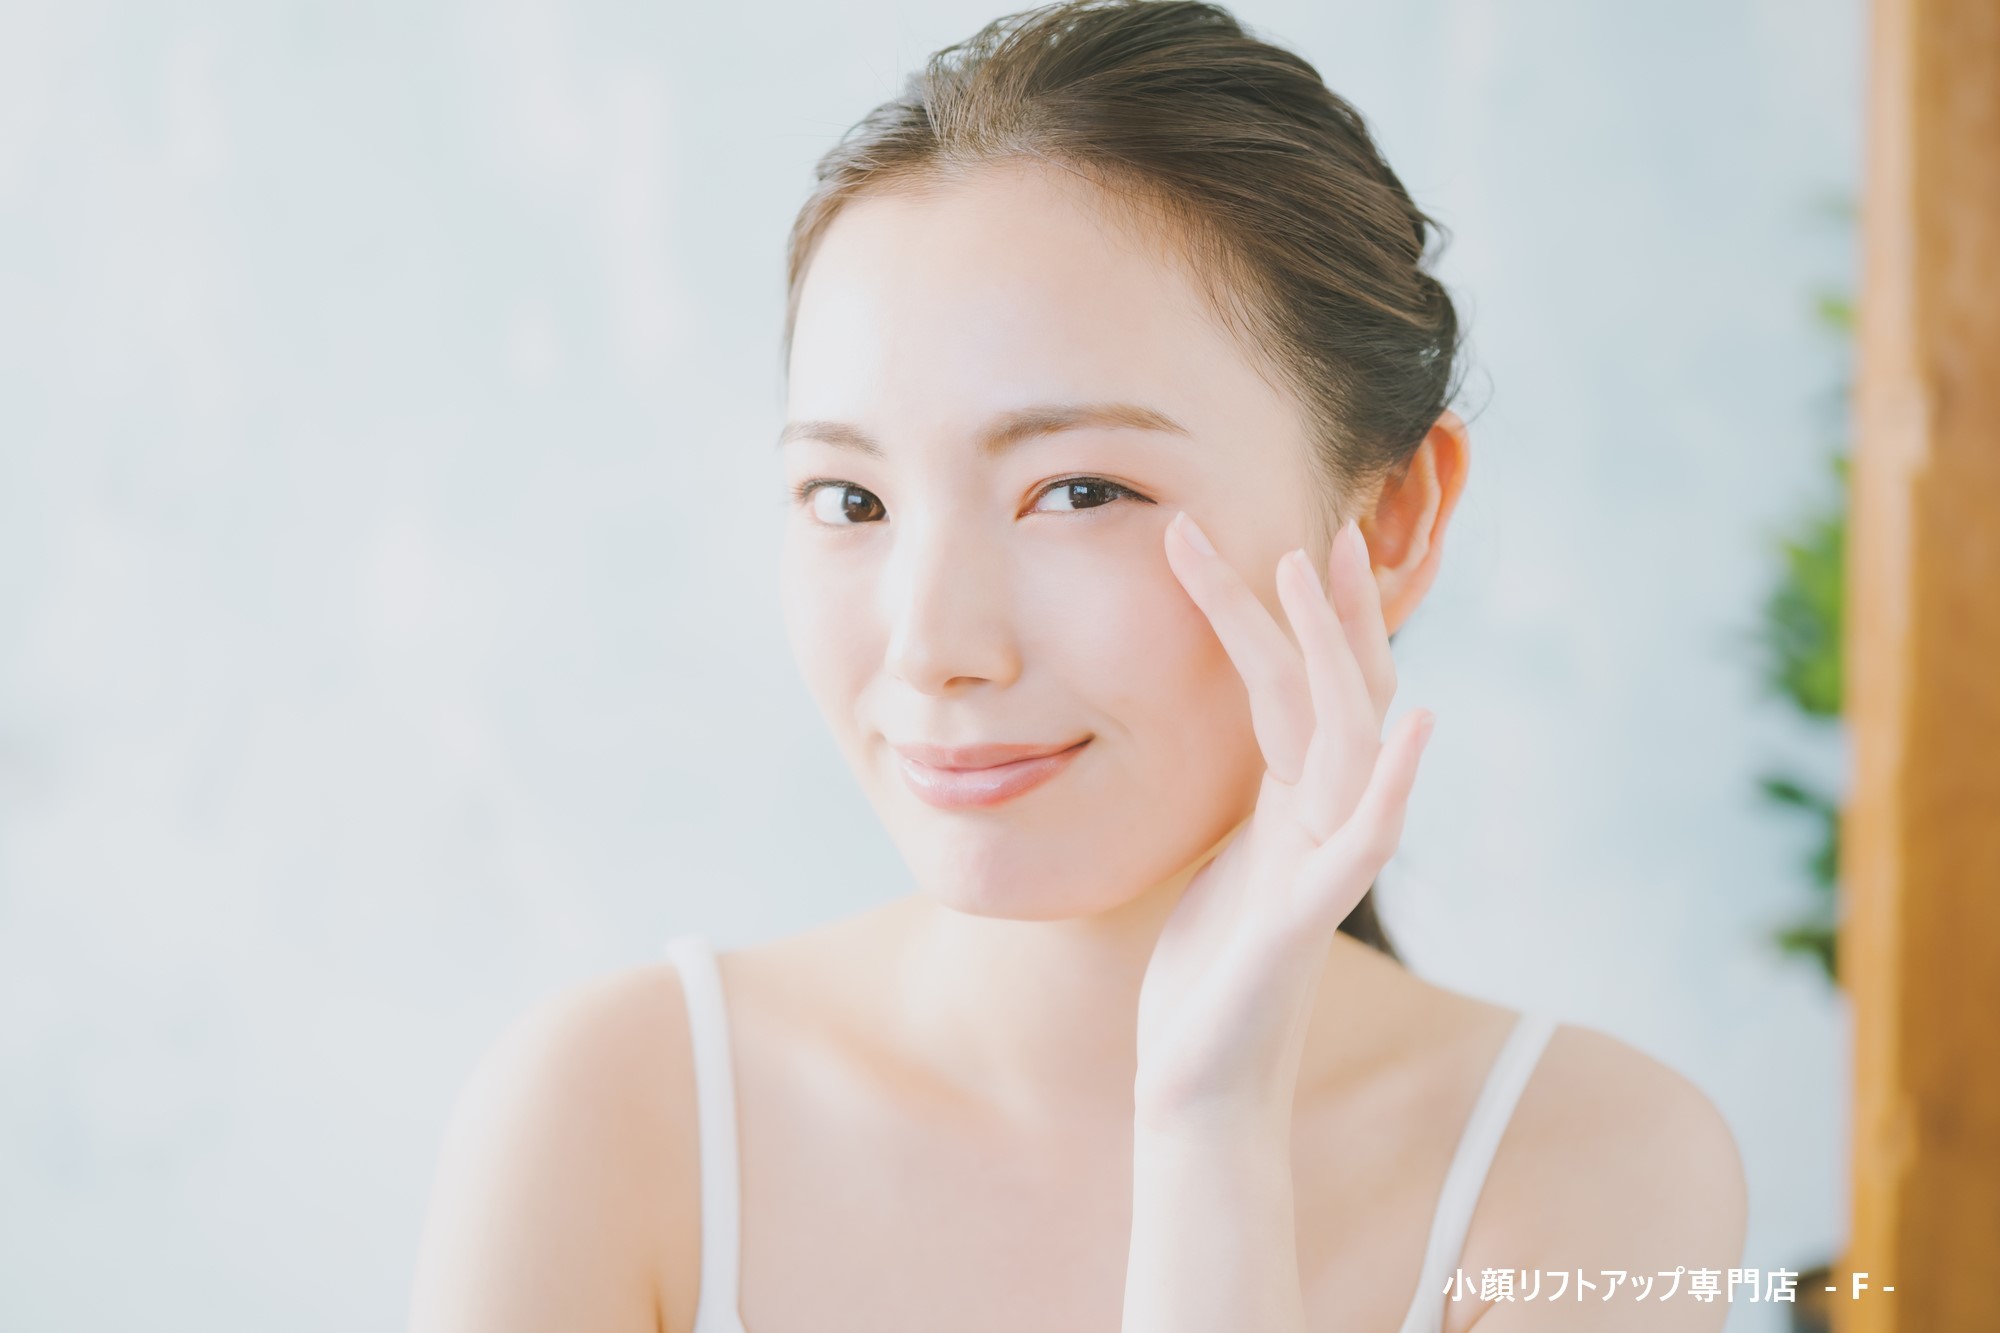 女性のための米こうじ入り美容大豆プロテイン
「Dr.KOUSO」のオンラインショップがリニューアルオープン！